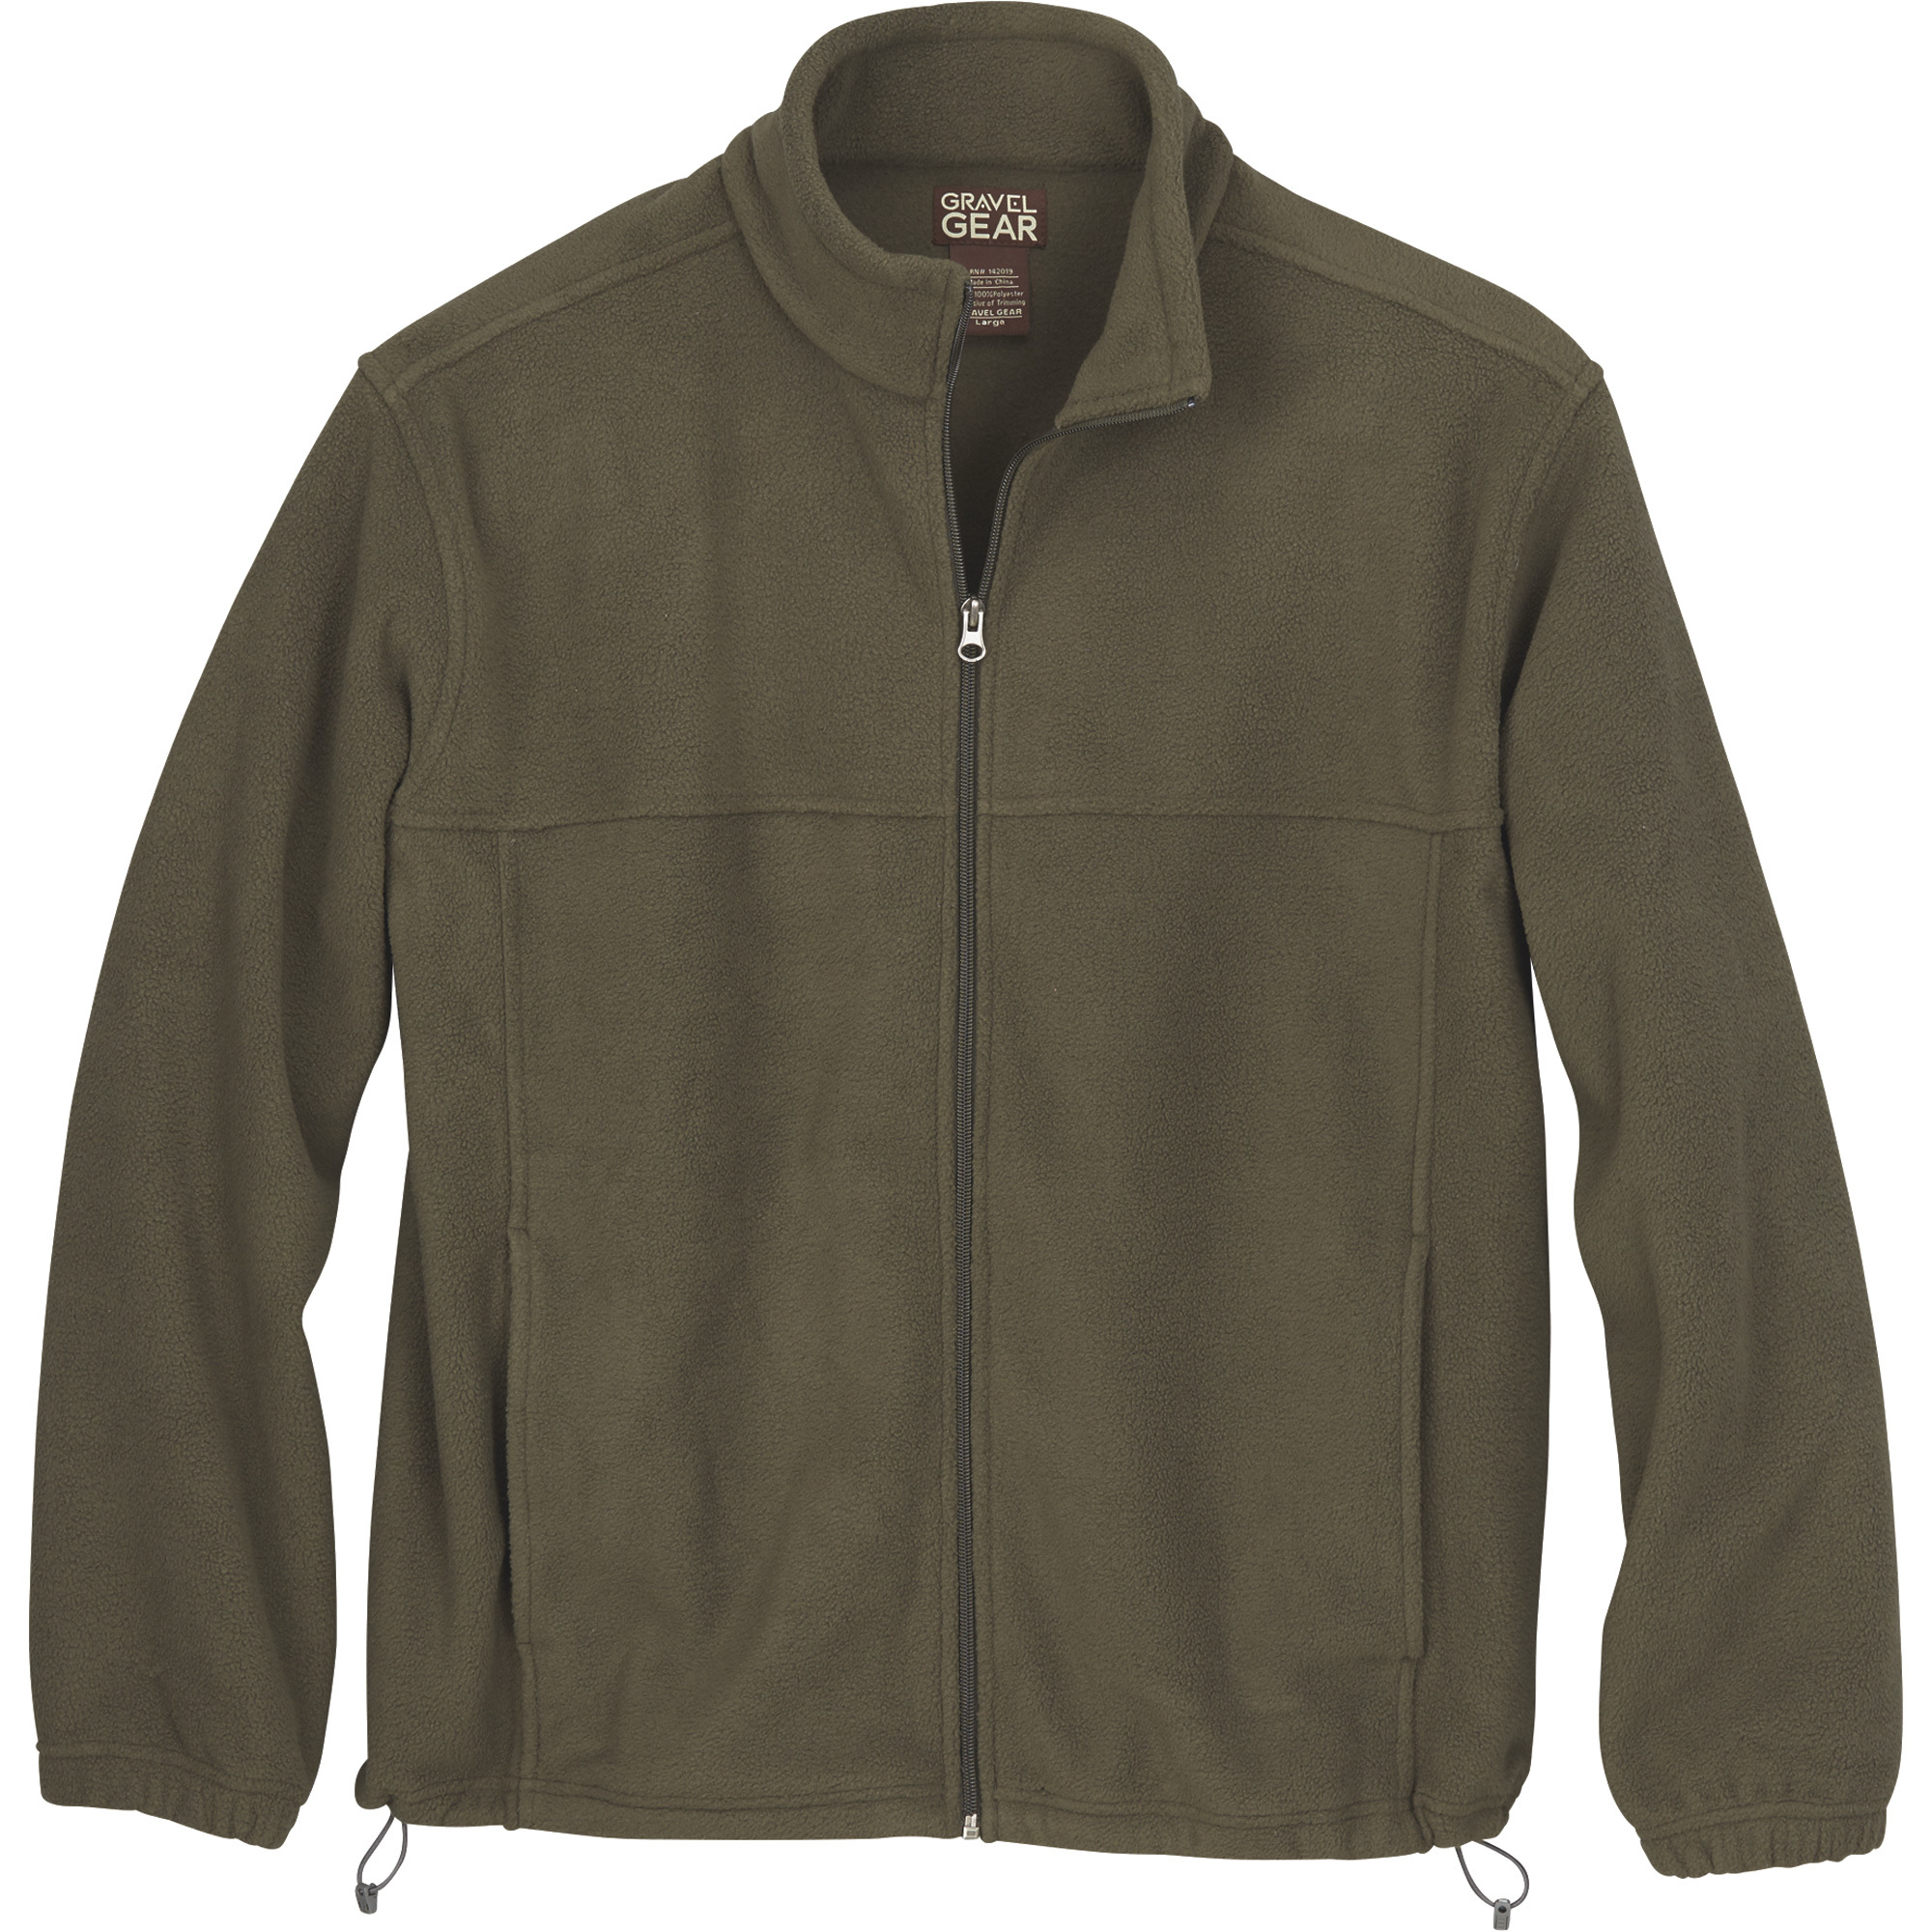 Gravel Gear Men's Zip-Up Fleece Jacket â Olive, XL